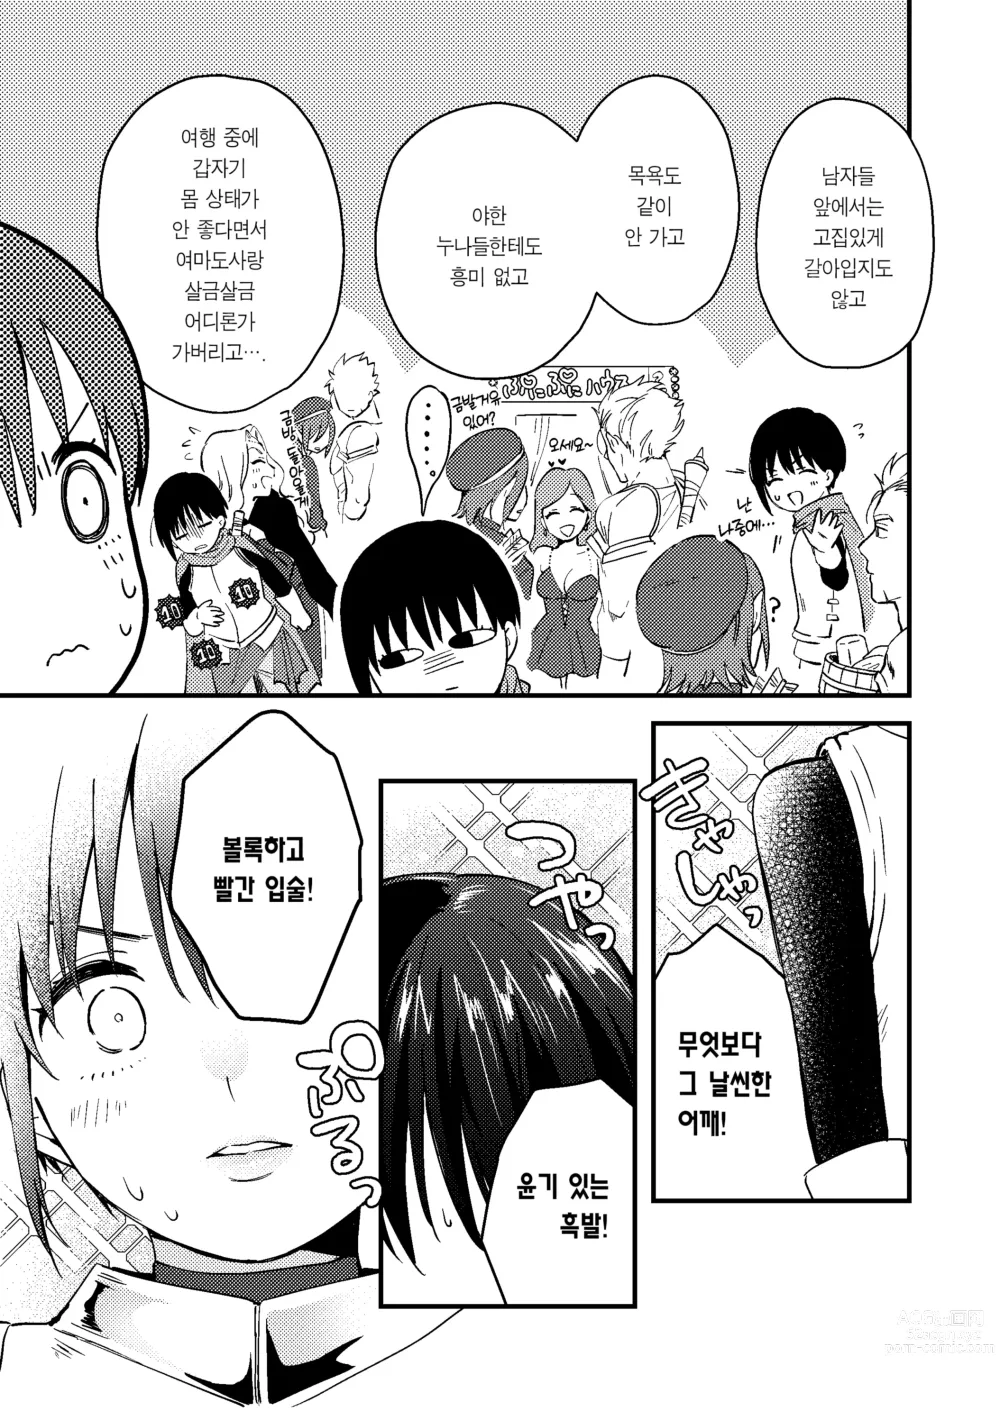 Page 8 of doujinshi 세계가 평화로워져서 용사(사실은 ♀)에게 구혼한 결과